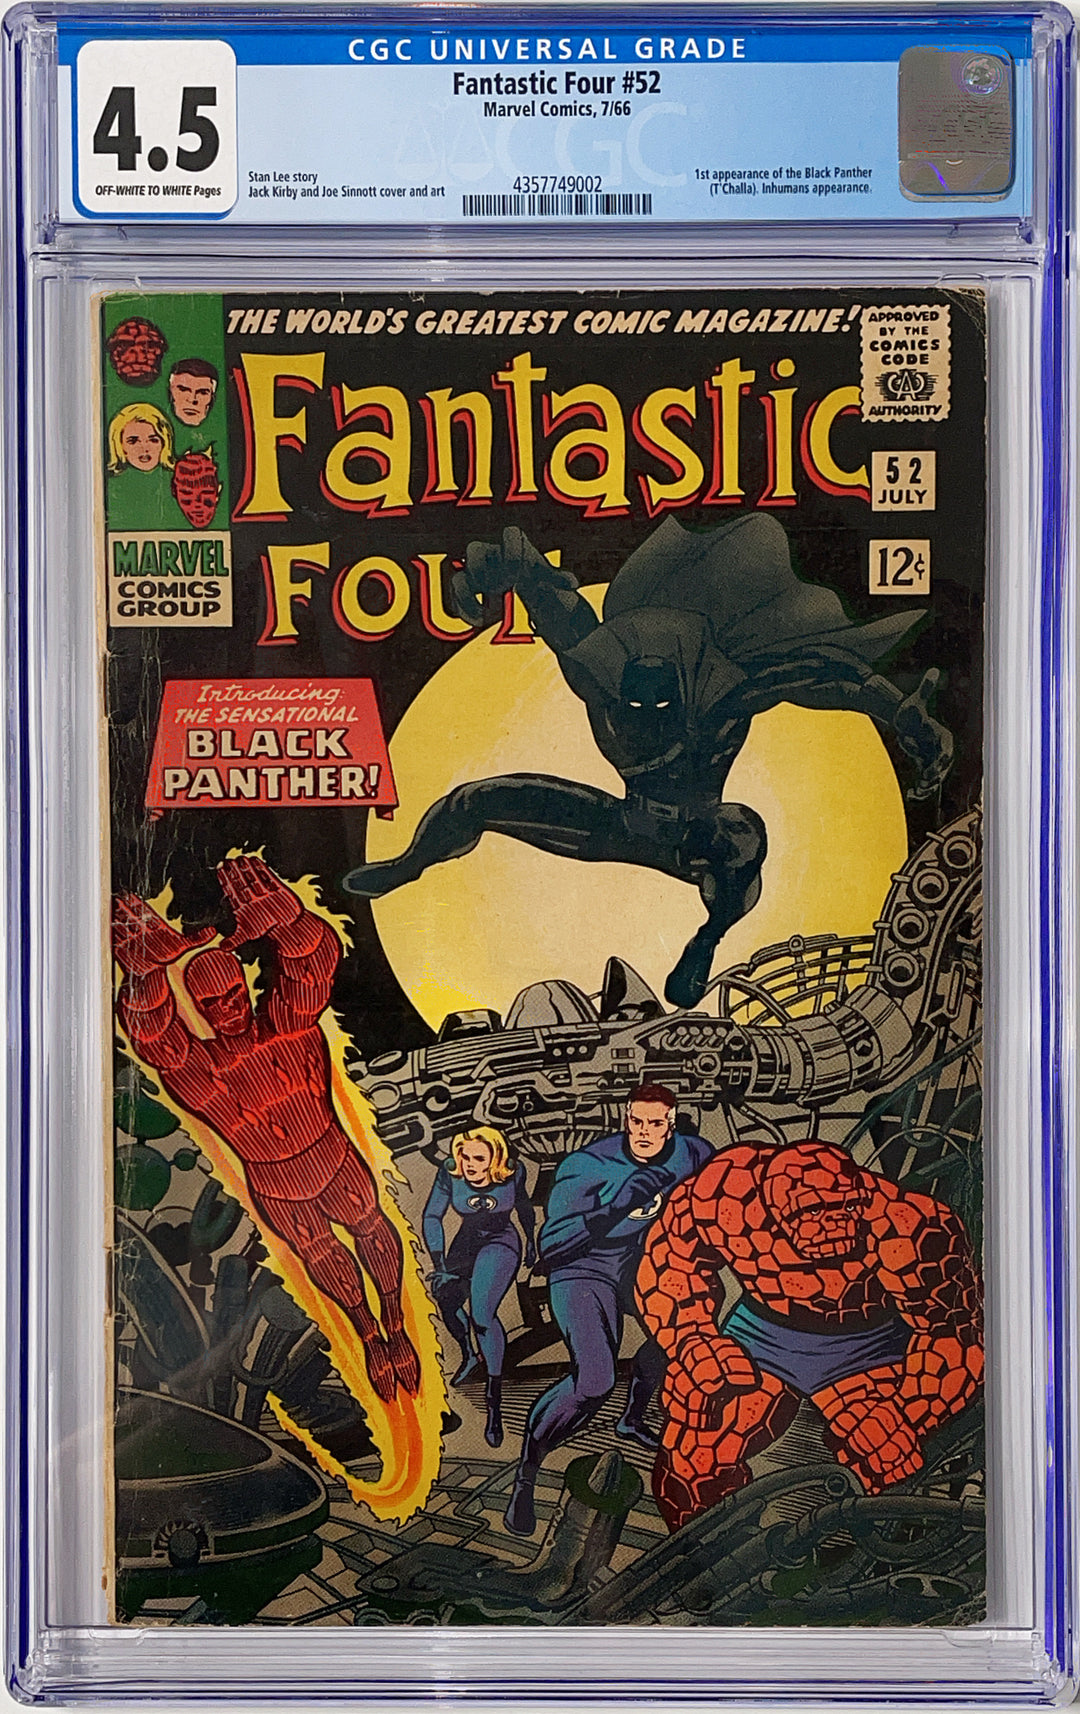 Fantastic Four, Vol. 1 #52 - CGC 4.5